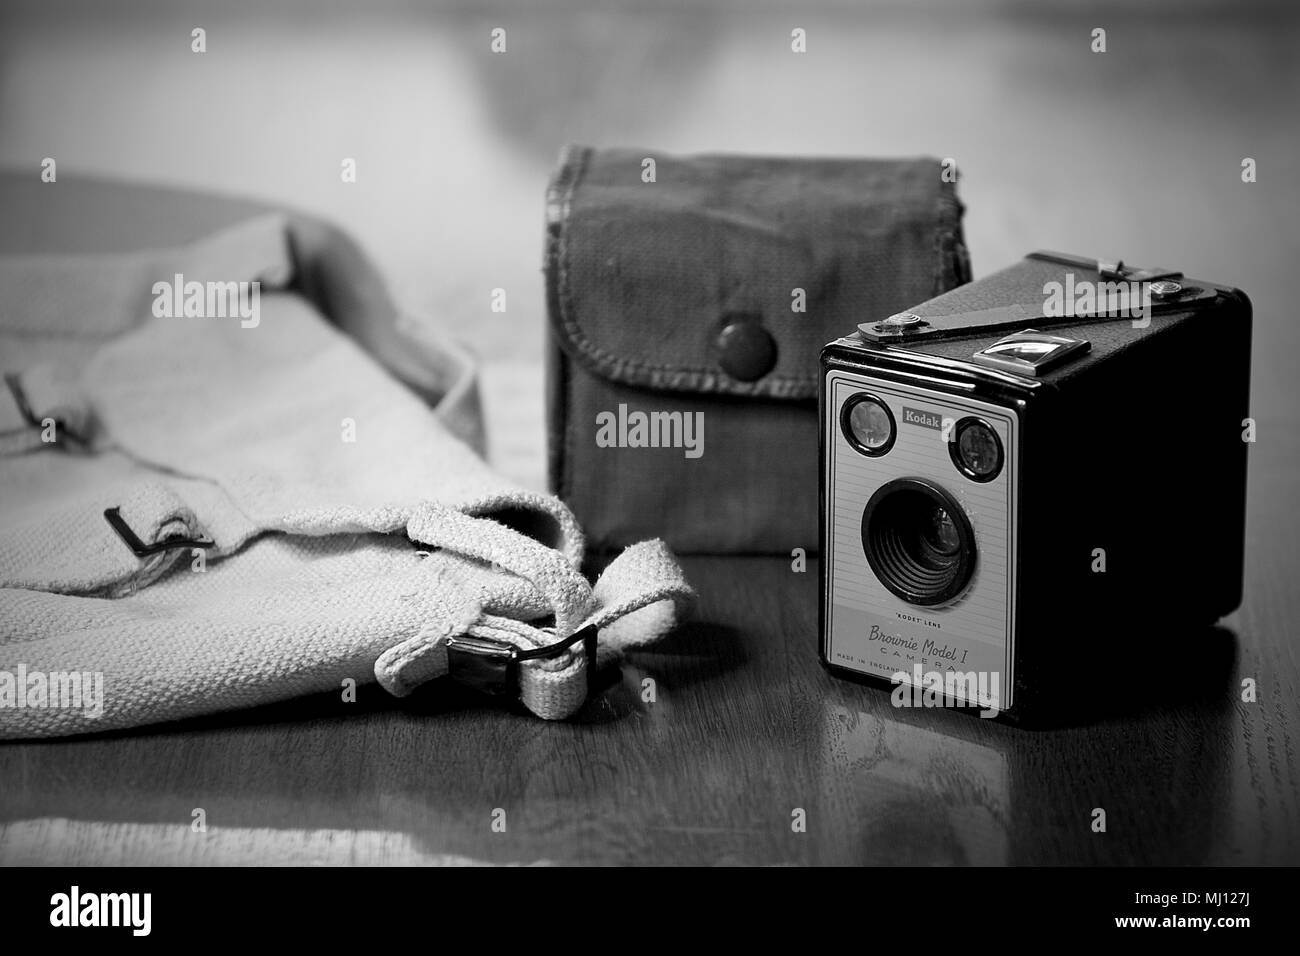 Un Kodak Brownie Modello 1 Fotocamera e custodia. Foto Stock